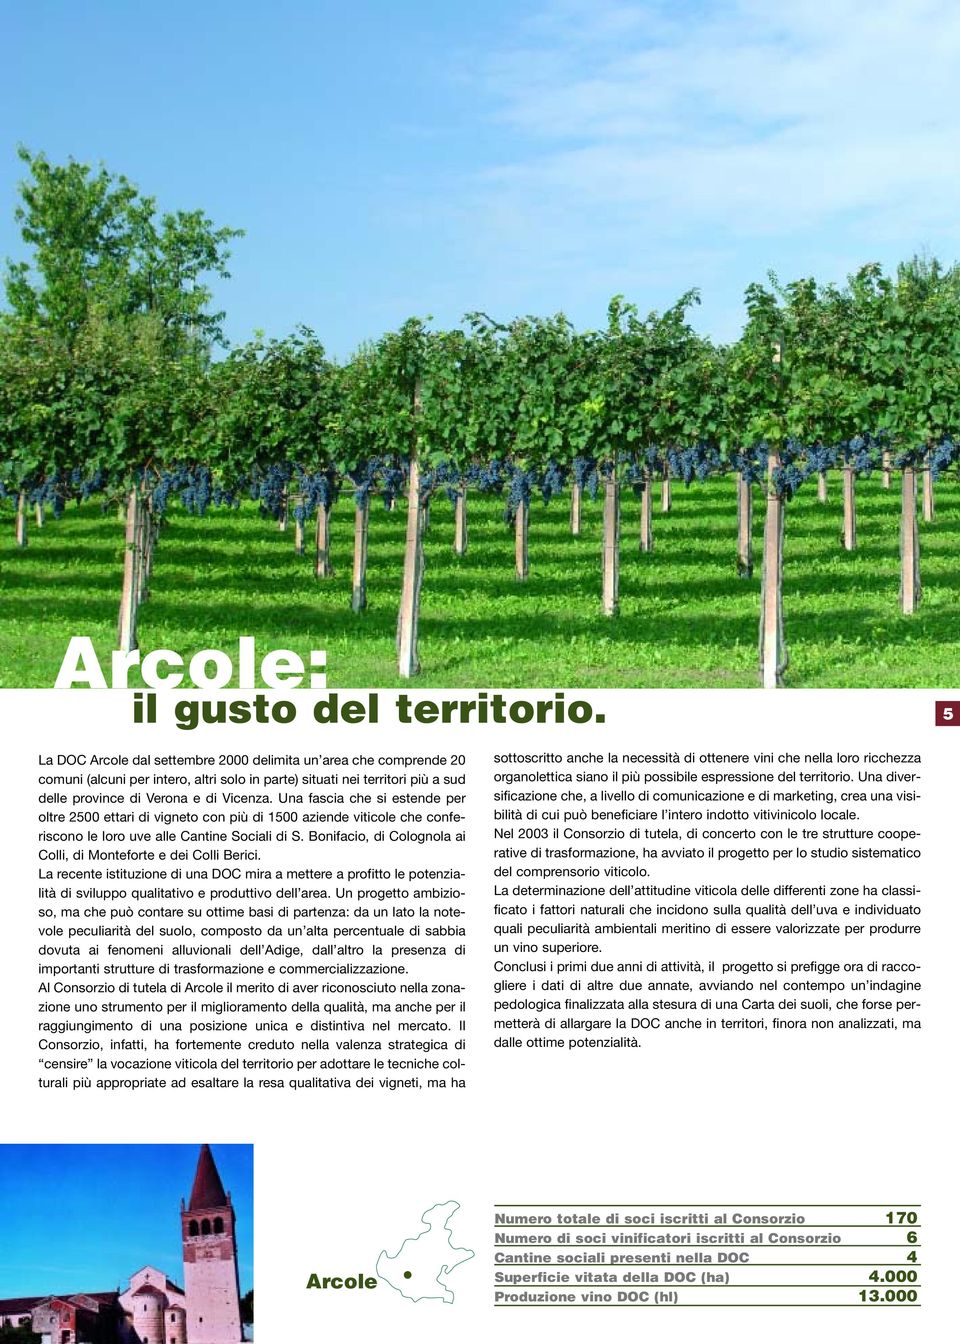 Una fascia che si estende per oltre 2500 ettari di vigneto con più di 1500 aziende viticole che conferiscono le loro uve alle Cantine Sociali di S.